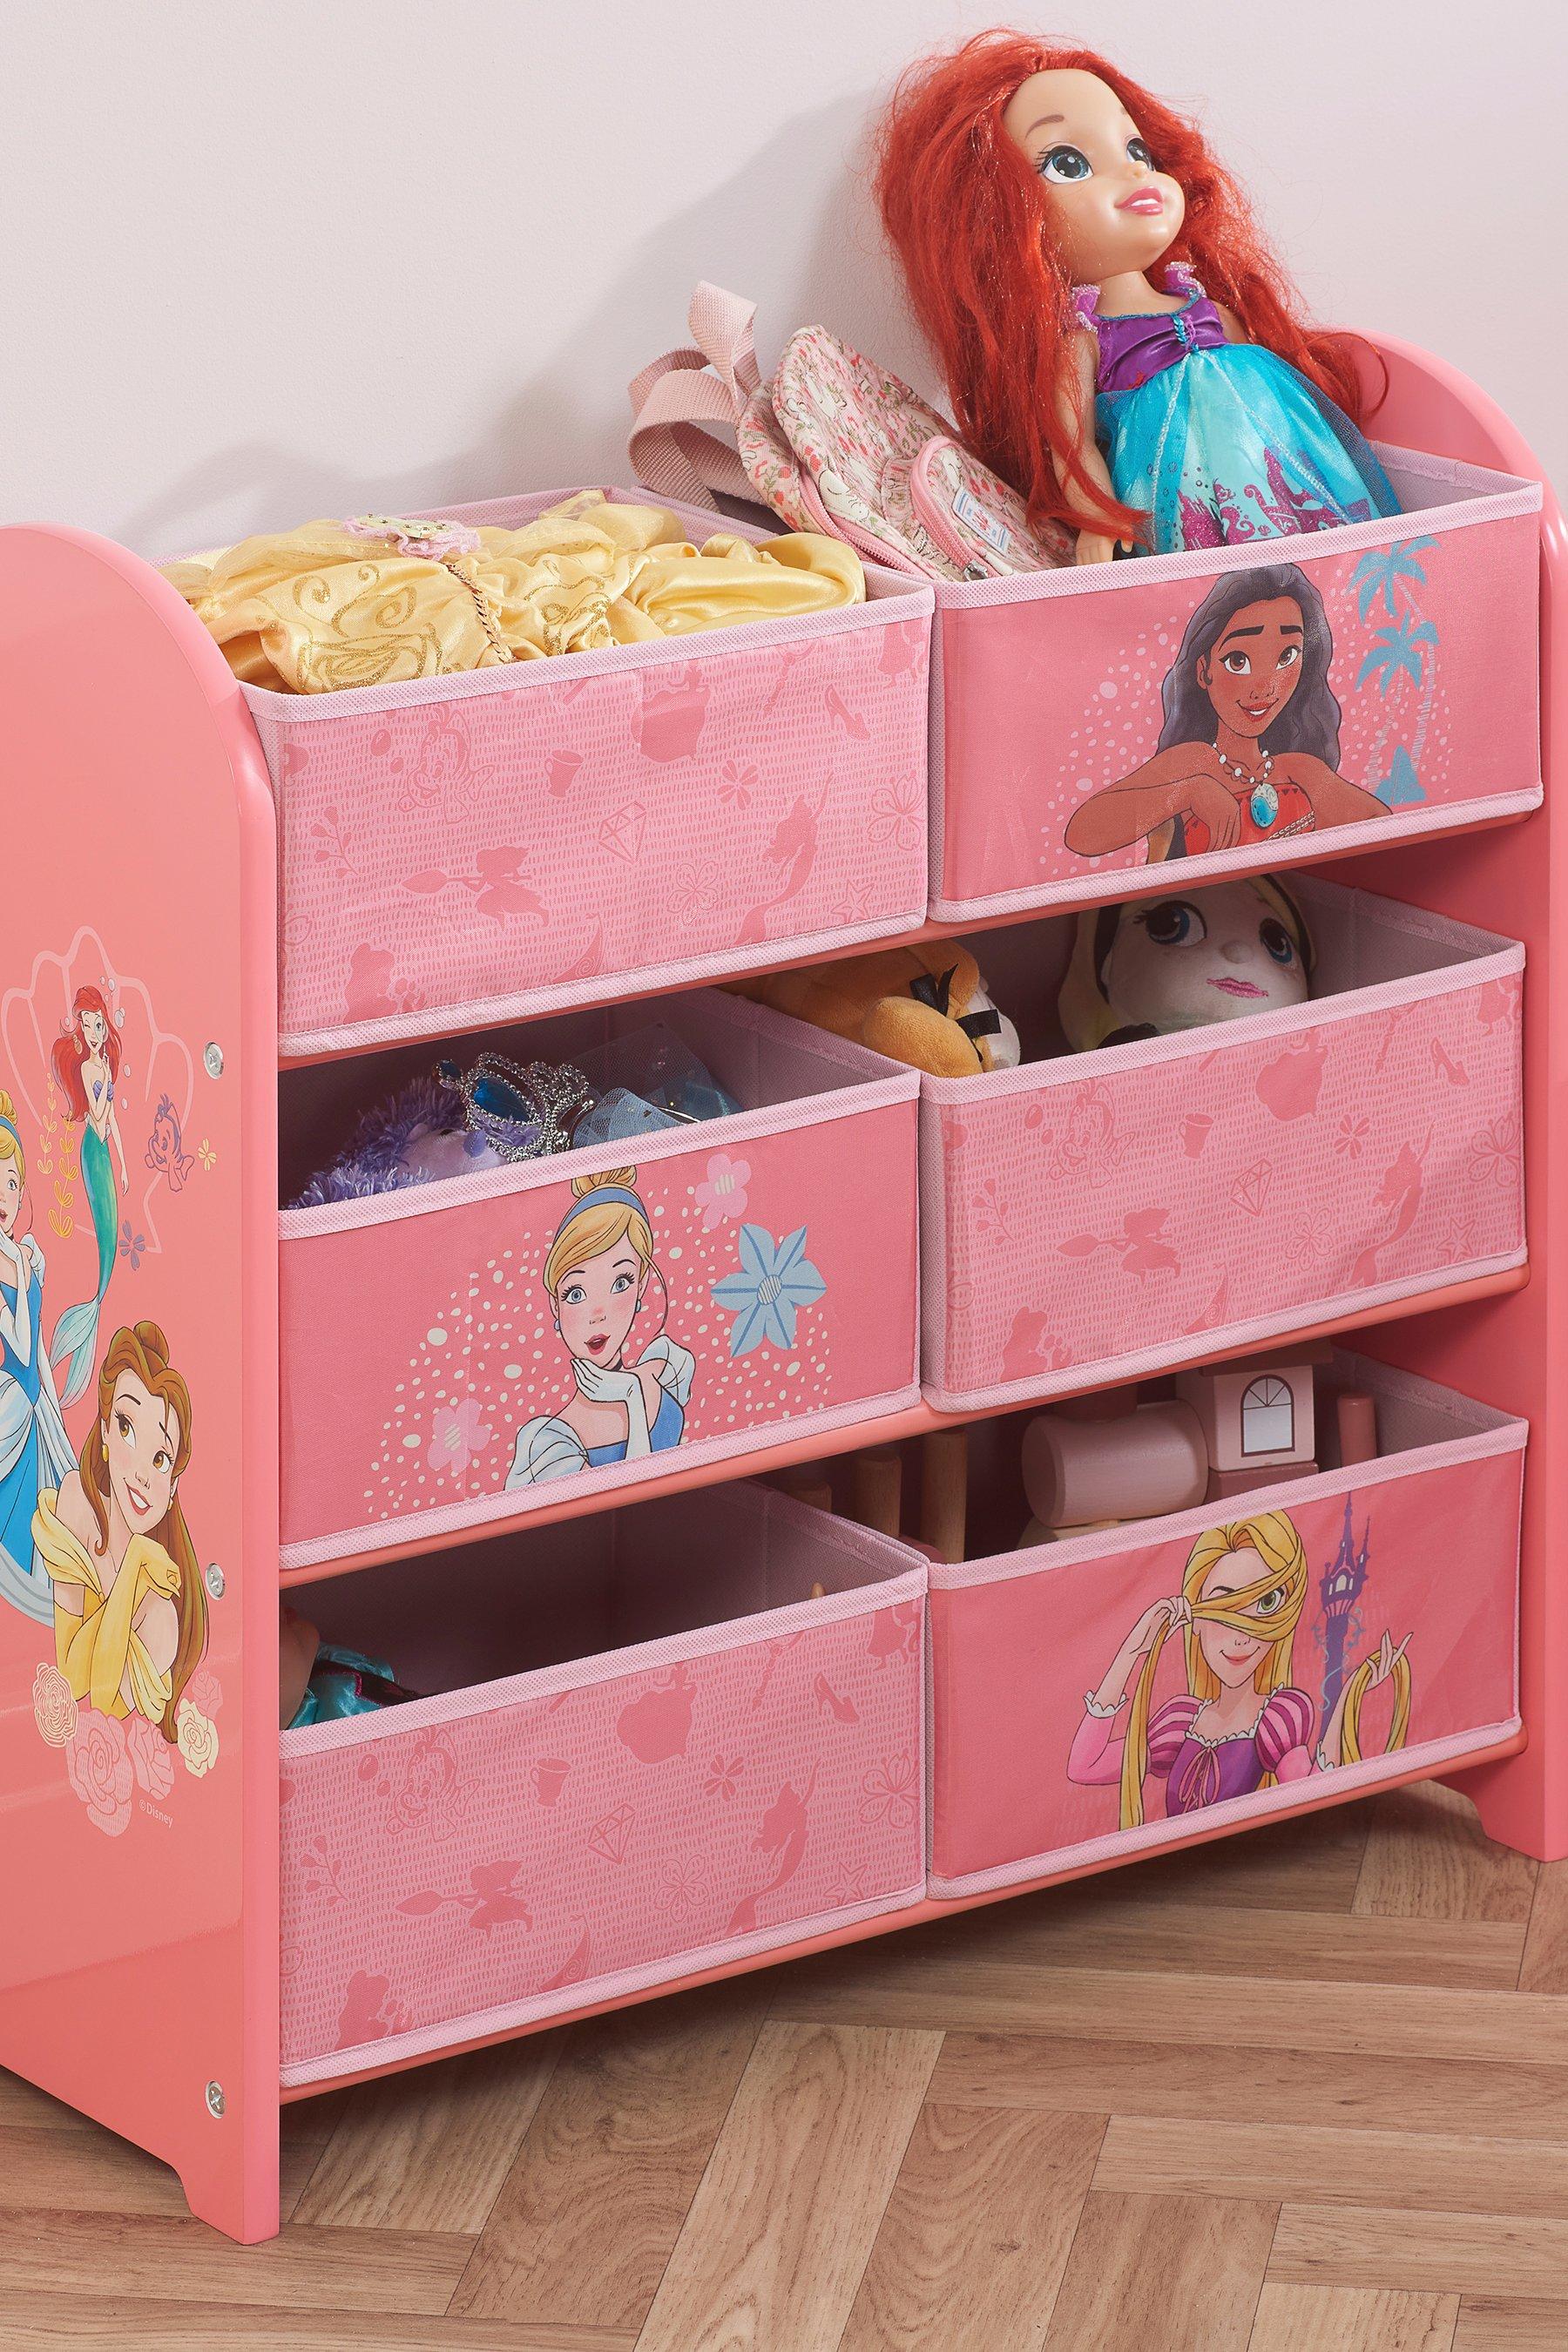 disney princess storage unit - pink - mdf